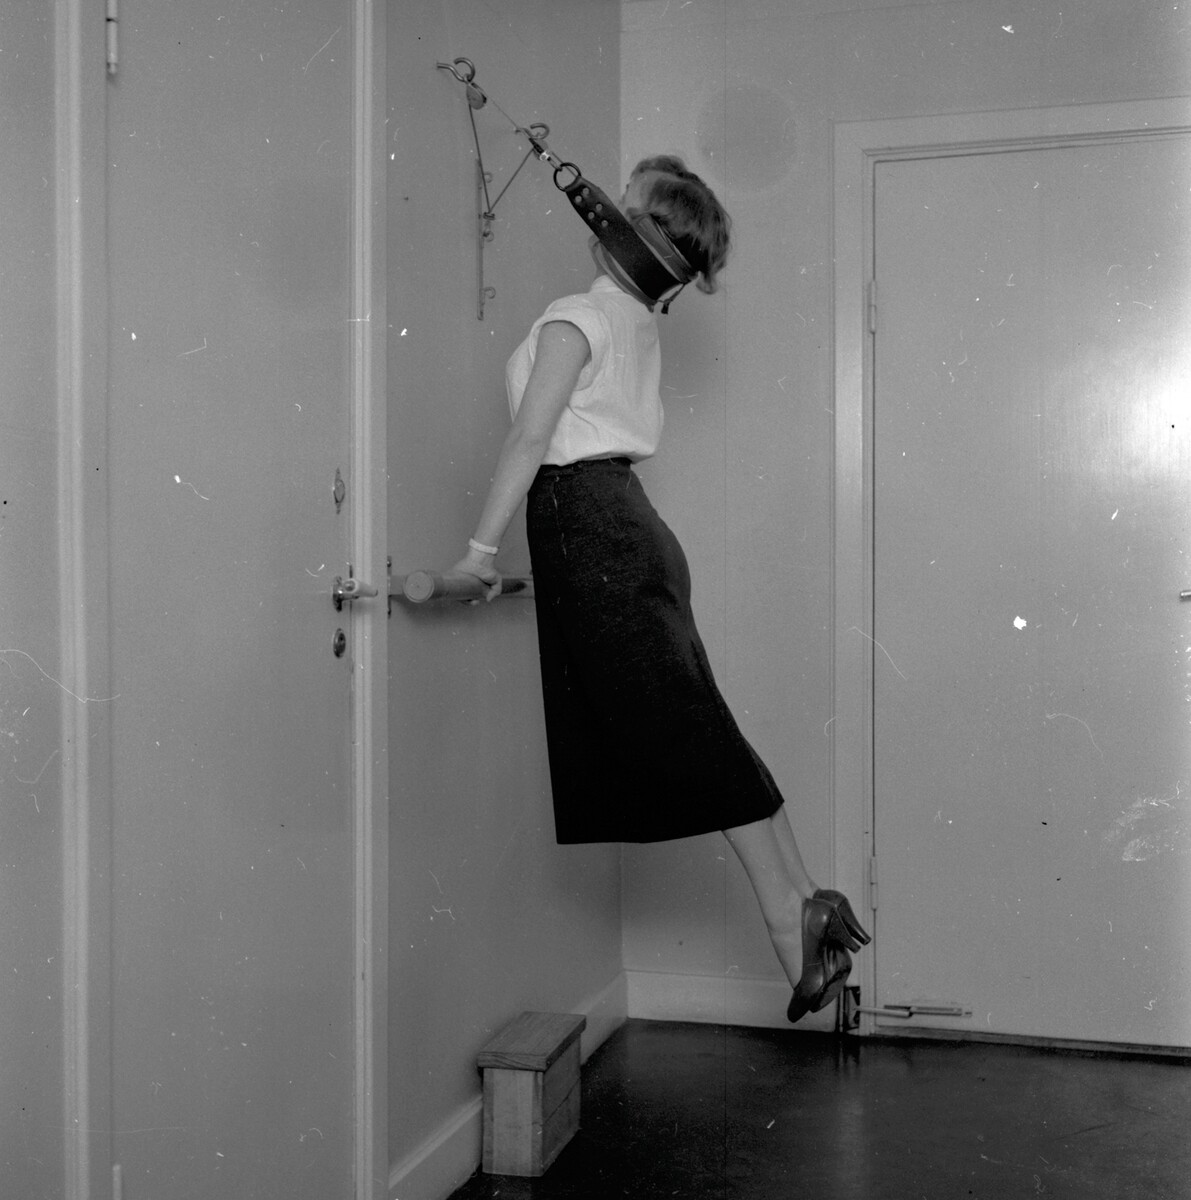 Гимнастика на рабочем месте, 1957. Фотограф Леннарт Олофссон